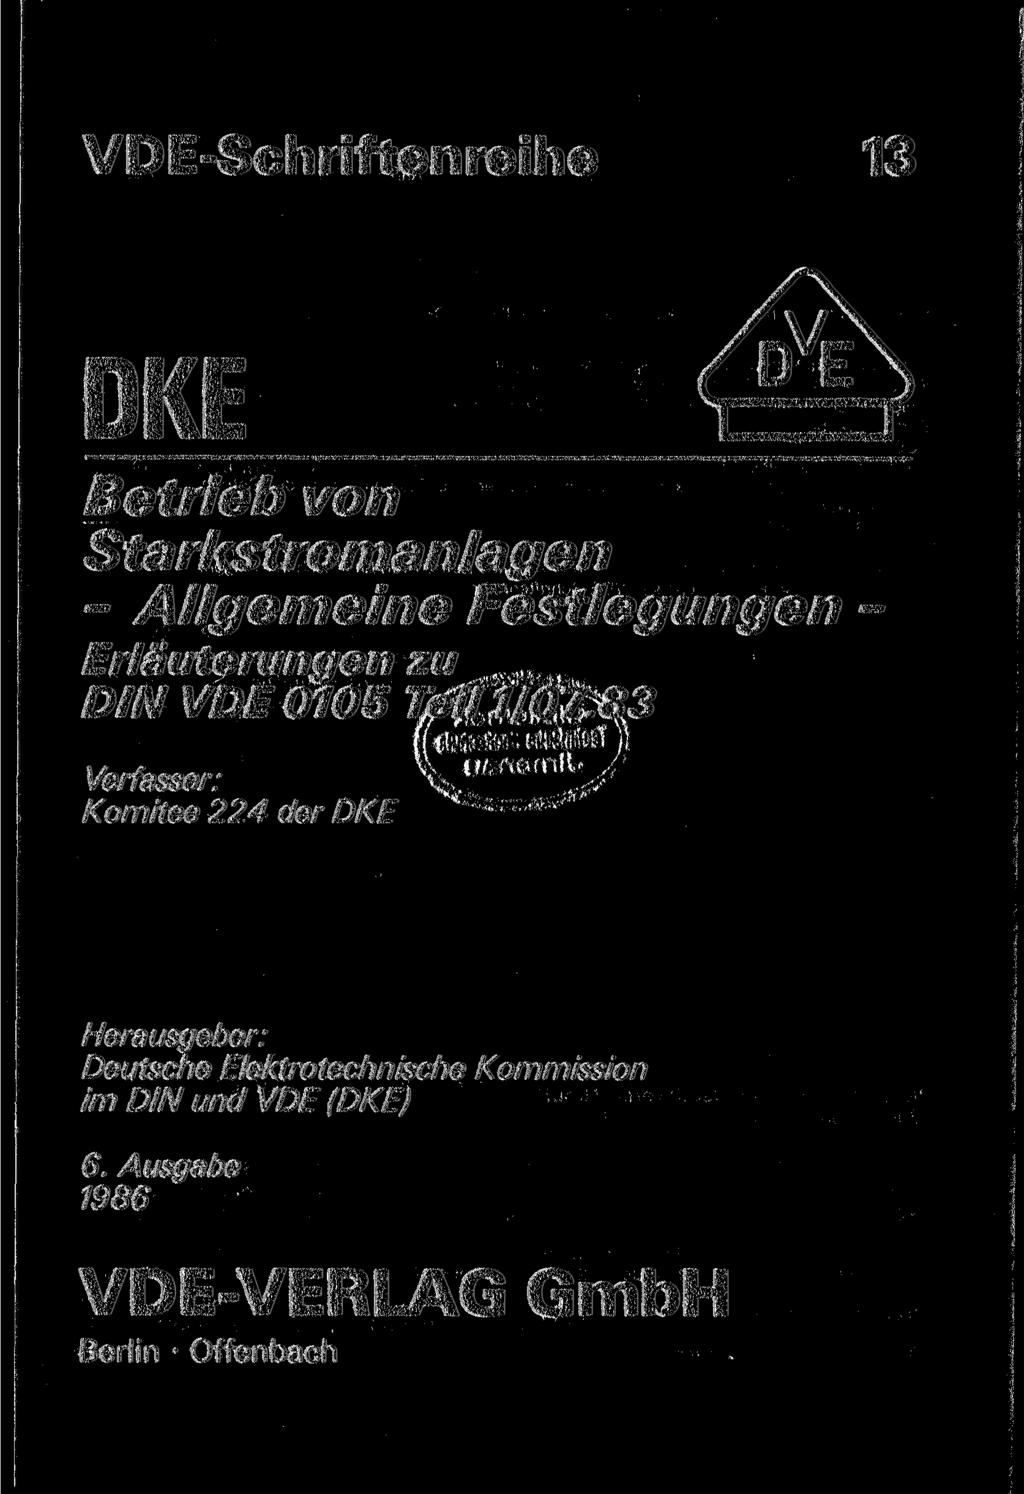 VDE-Schriftenreihe 13 DKE Betrieb von Starkstromanlagen - Allgemeine Festlegungen - Erläuterungen zu DIN VDE 0105 Teil 1/07.